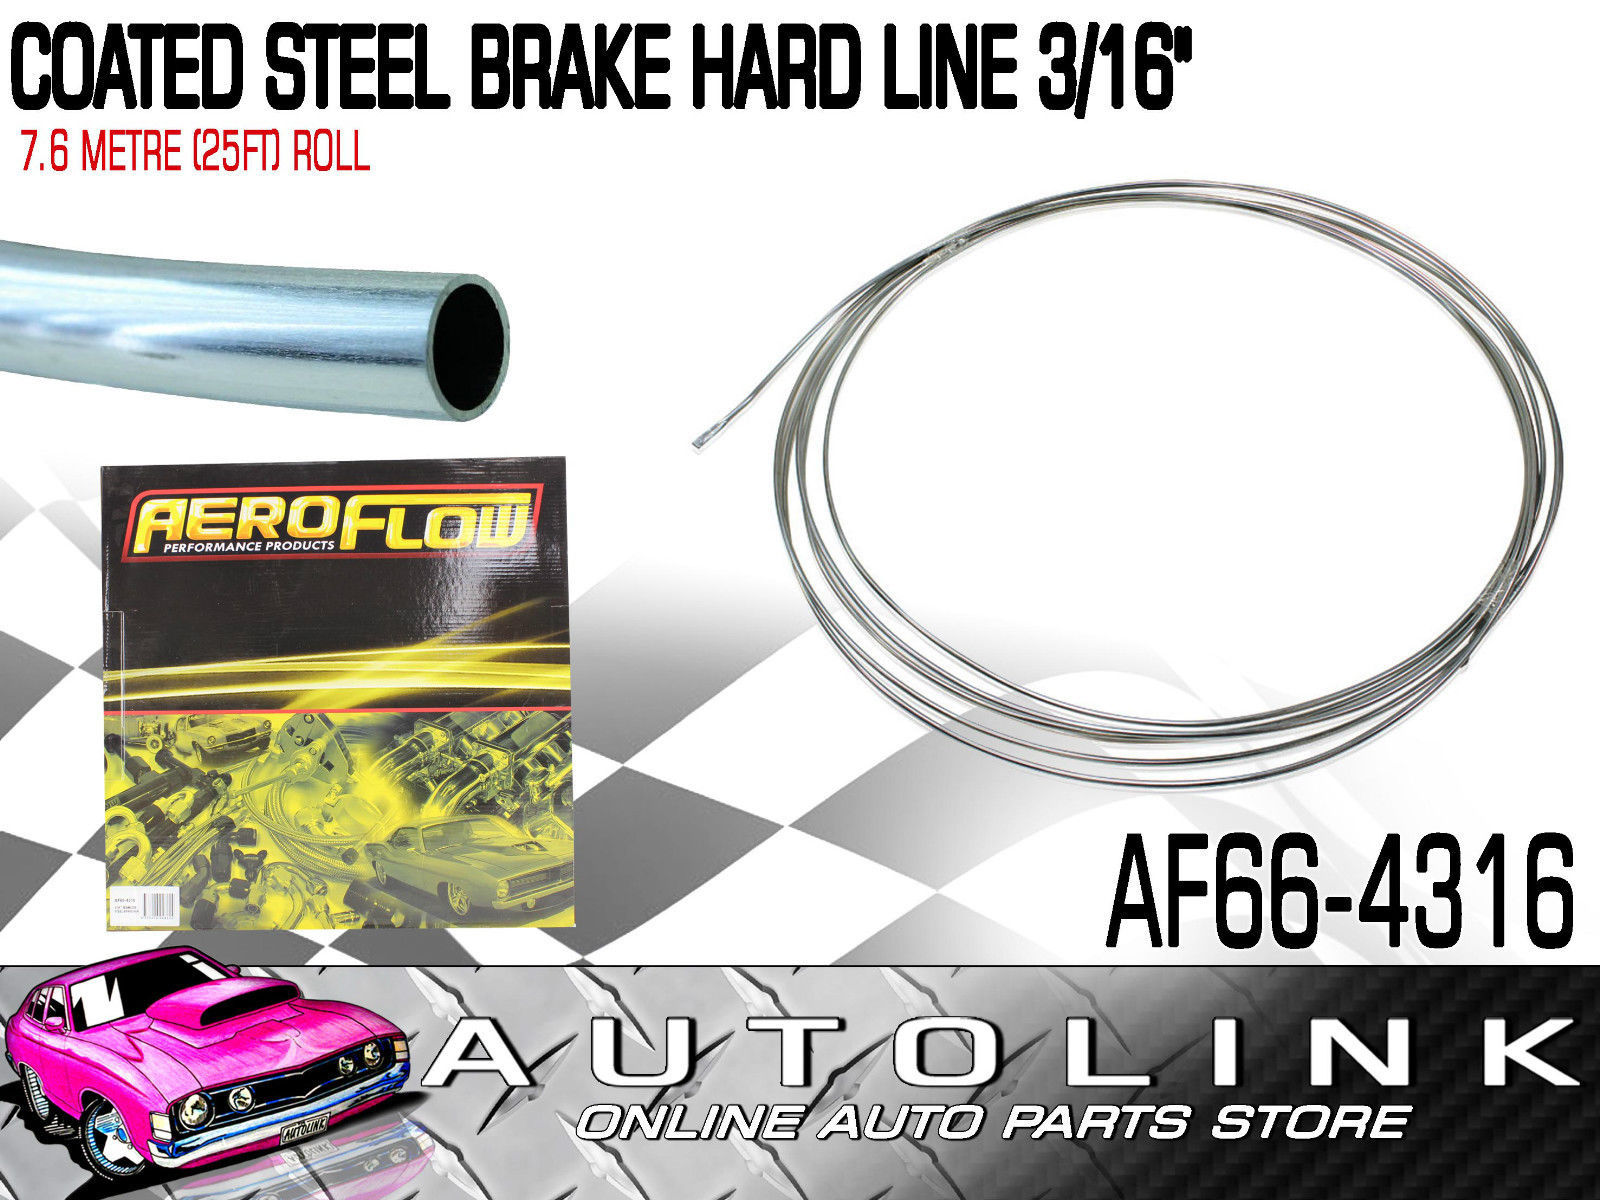 AEROFLOW AF66-4316 BRAKE HARD LINE STEEL 3/16  DIA - 25FT 7.6